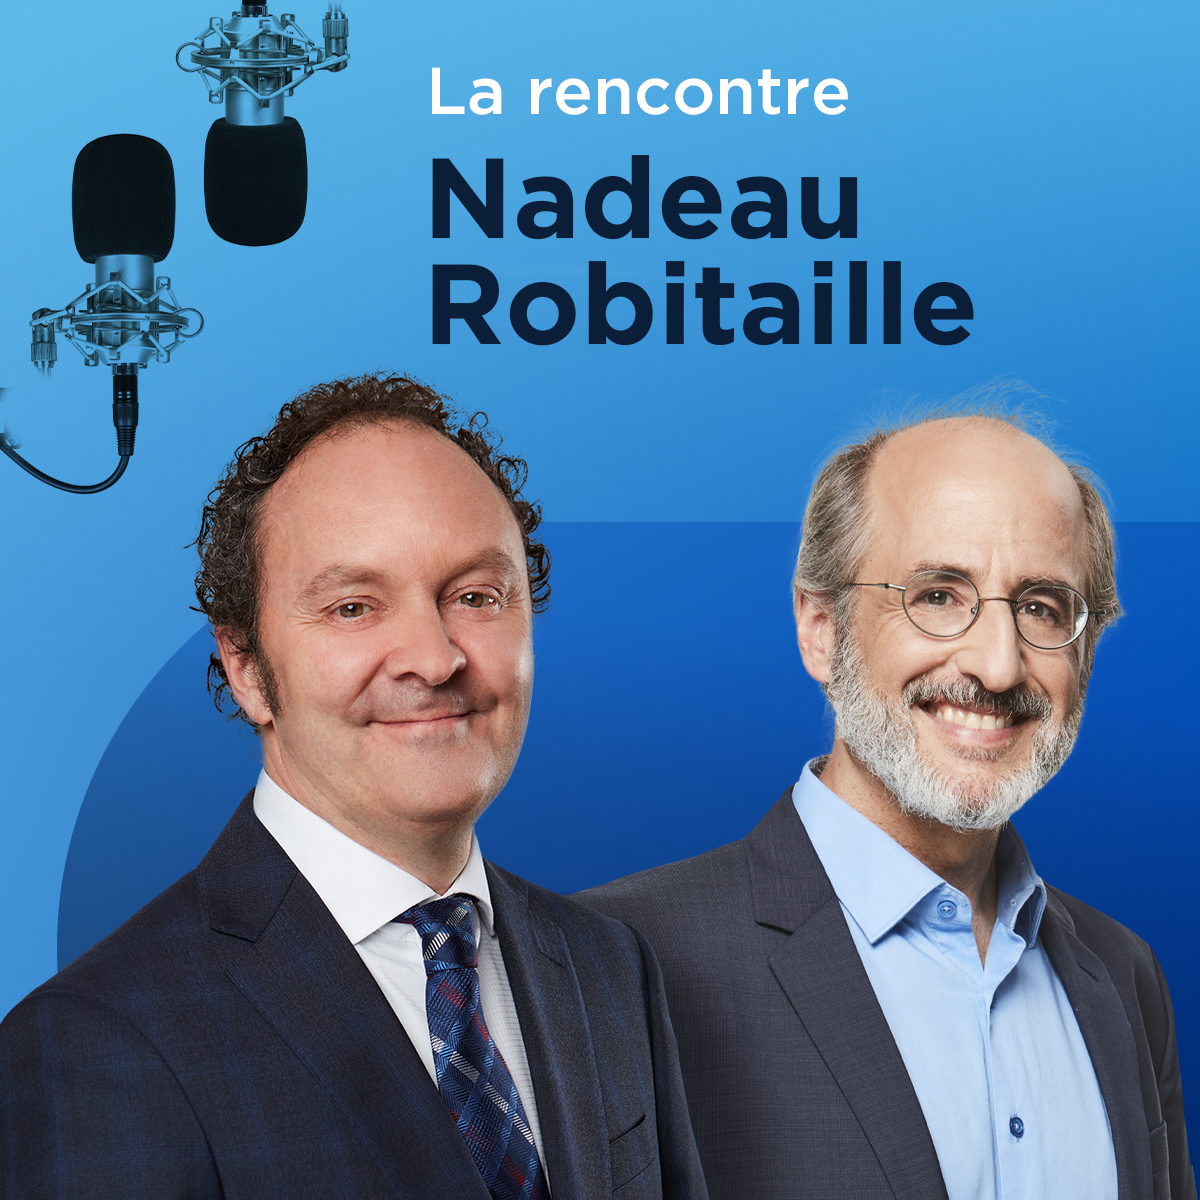 «Gabriel Nadeau-Dubois a eu une belle occasion», rapporte Rémi Nadeau